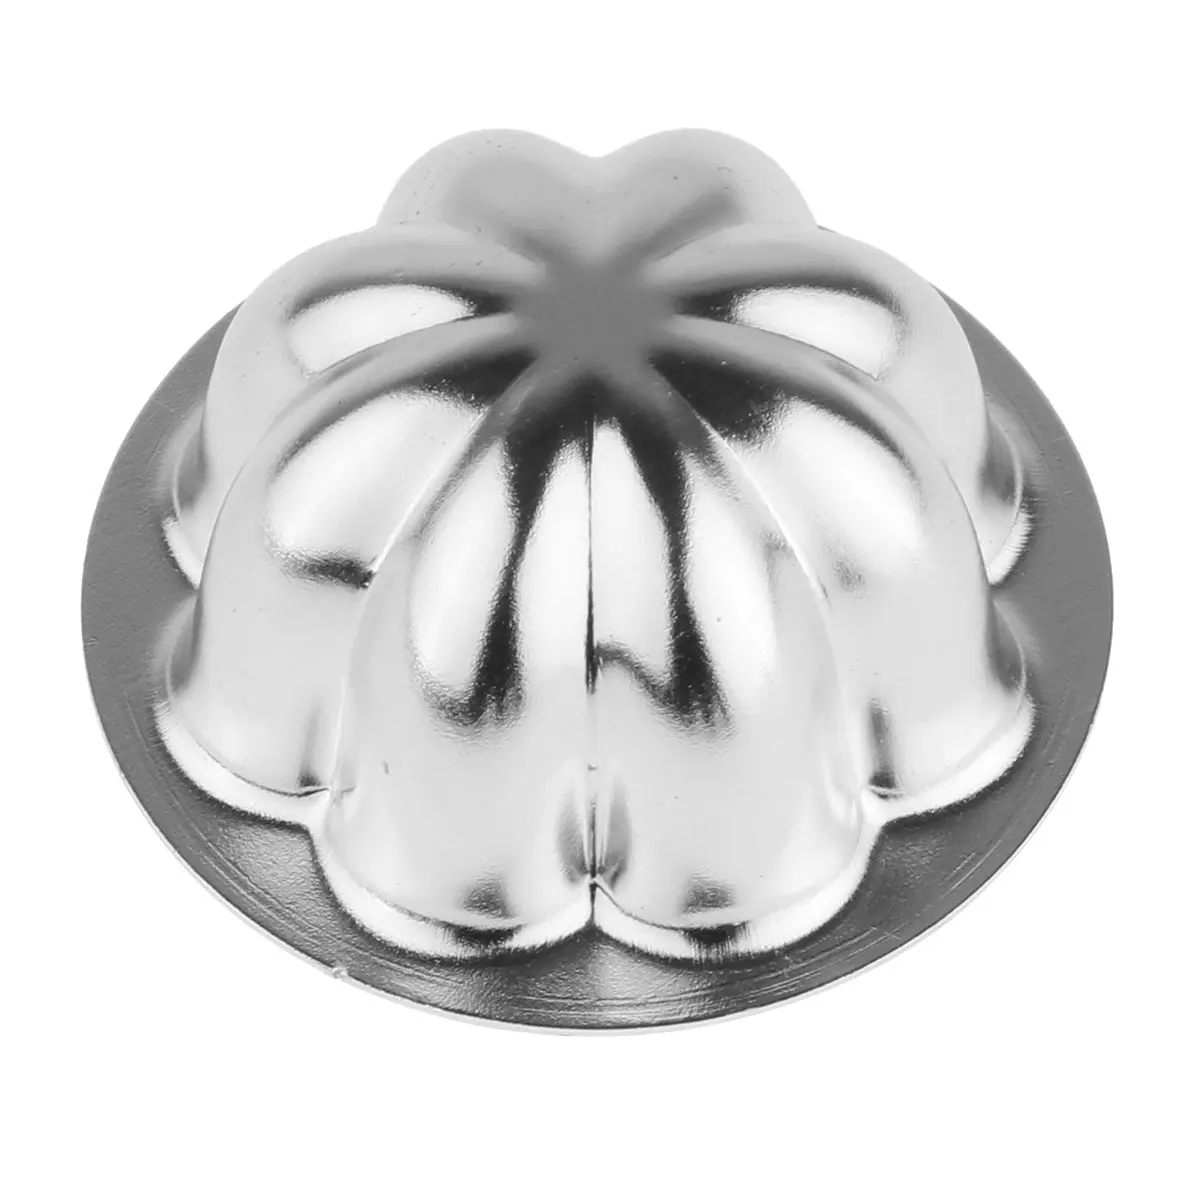 5 шт. антипригарный алюминиевый сплав выпечка чашки пироги формы для яичного пирога форма цветка многоразовая форма для торта, капкейков, чашки для кексов тарталетки